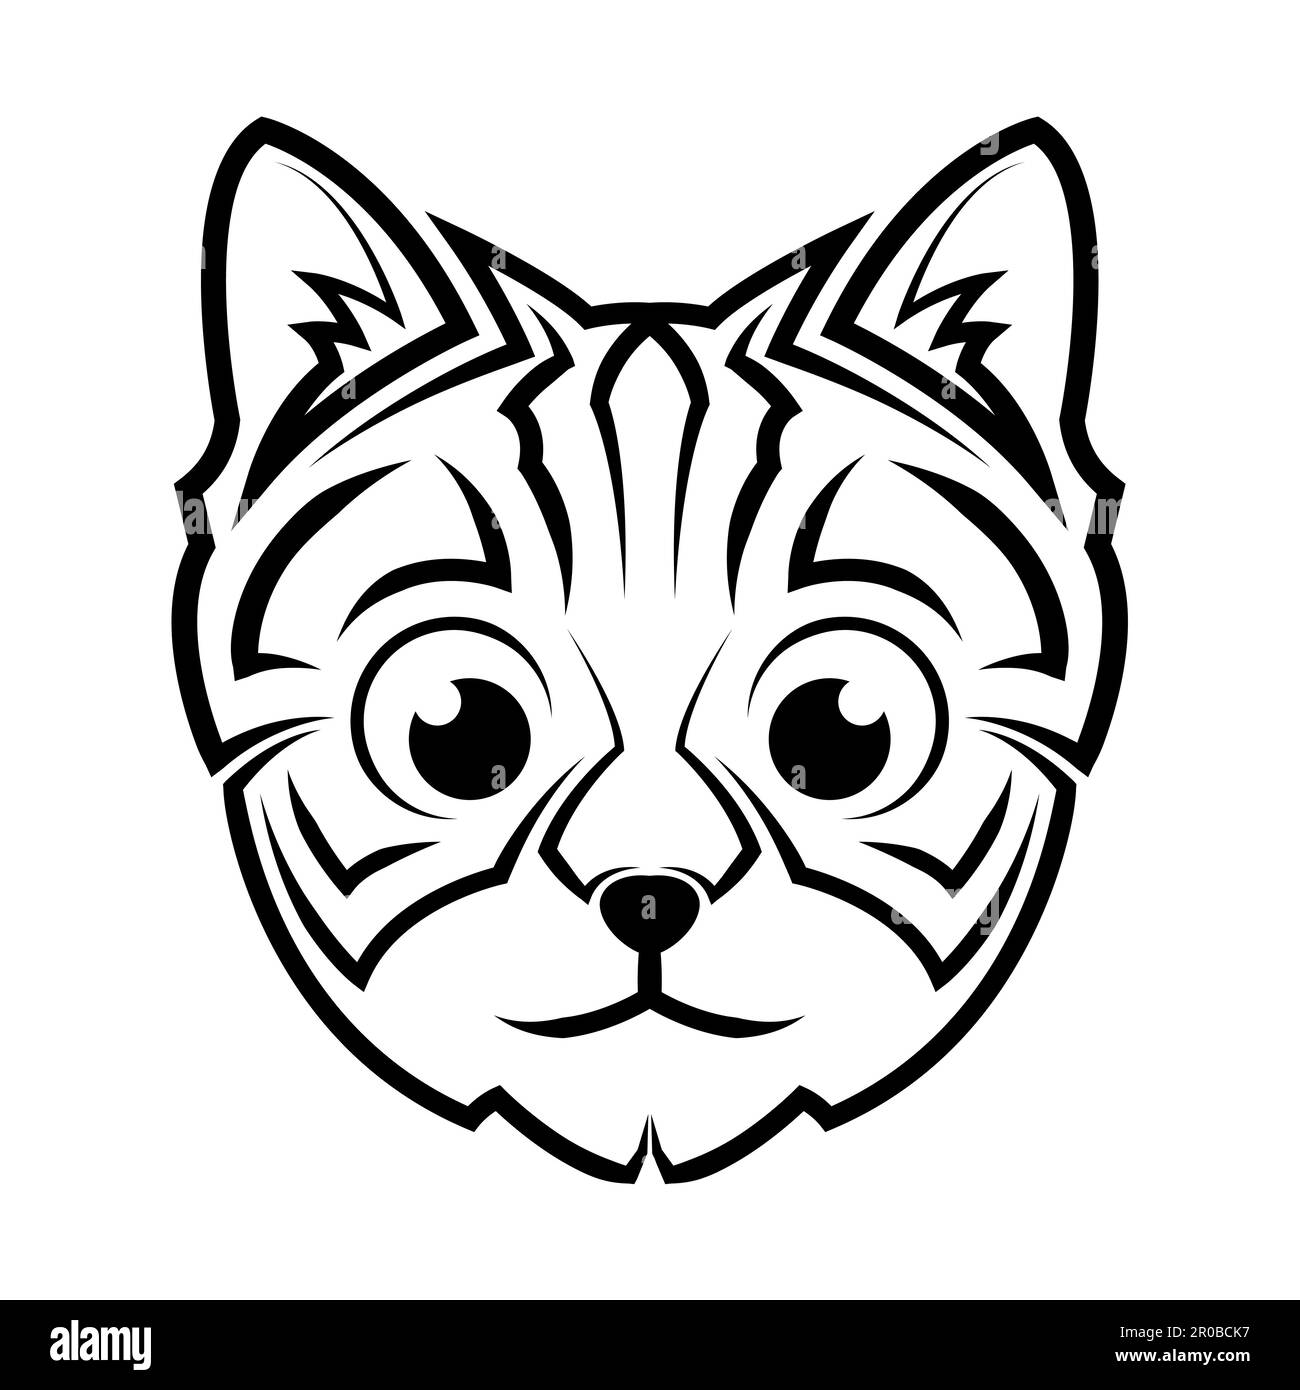 immagine della testa carina del gatto. Buon uso per simbolo, mascotte, icona, avatar, tatuaggio, T-Shirt design, logo o qualsiasi design. Illustrazione Vettoriale